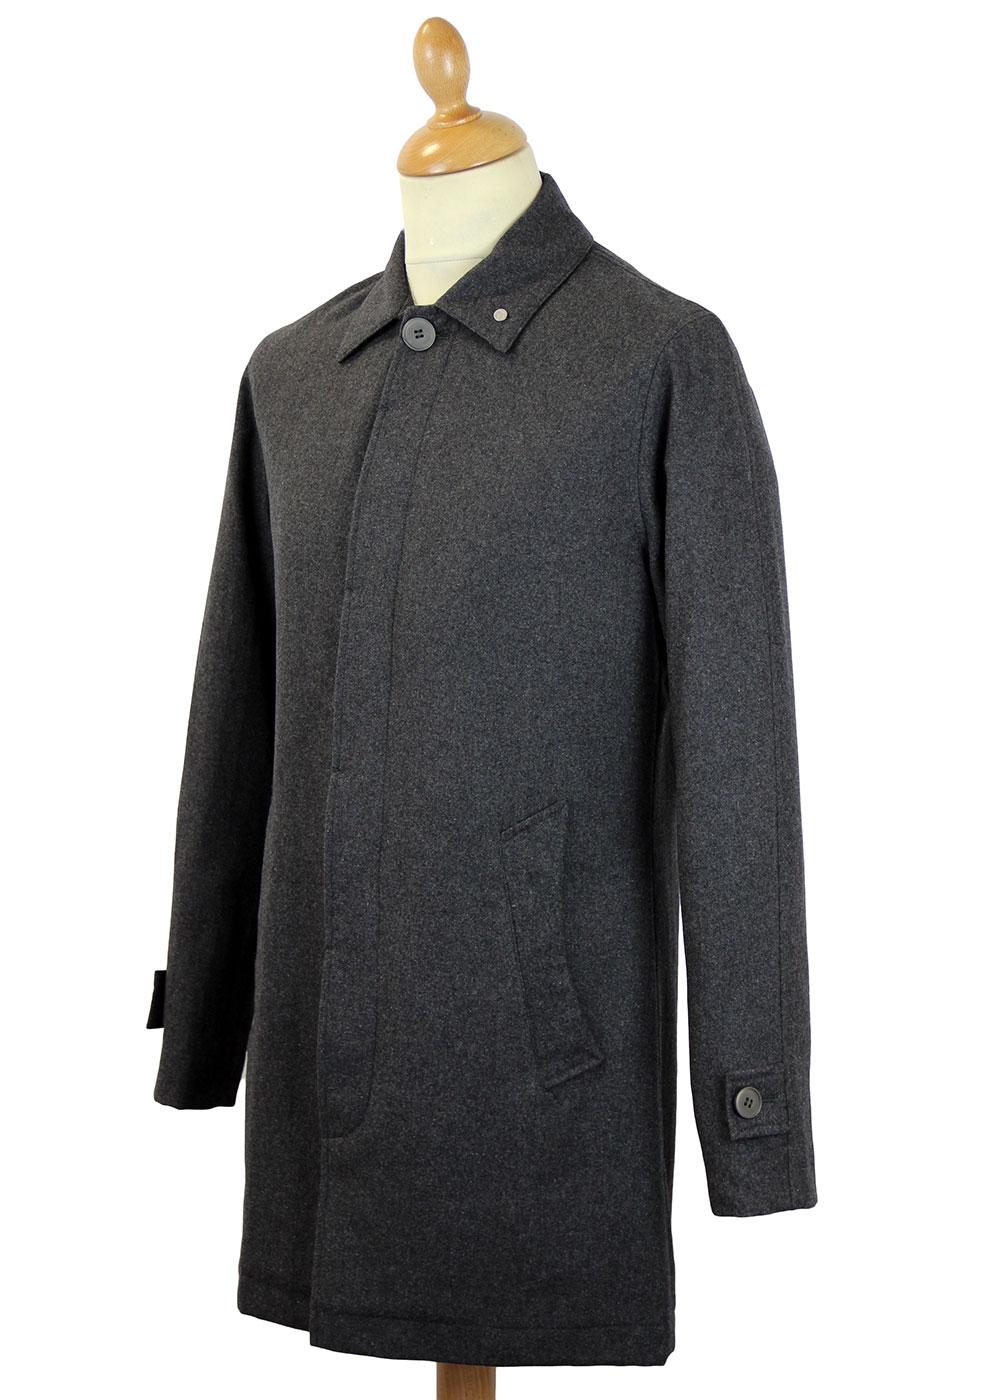 PETER WERTH Twyford Retro 60s Mod Charcoal Flannel Mac Coat